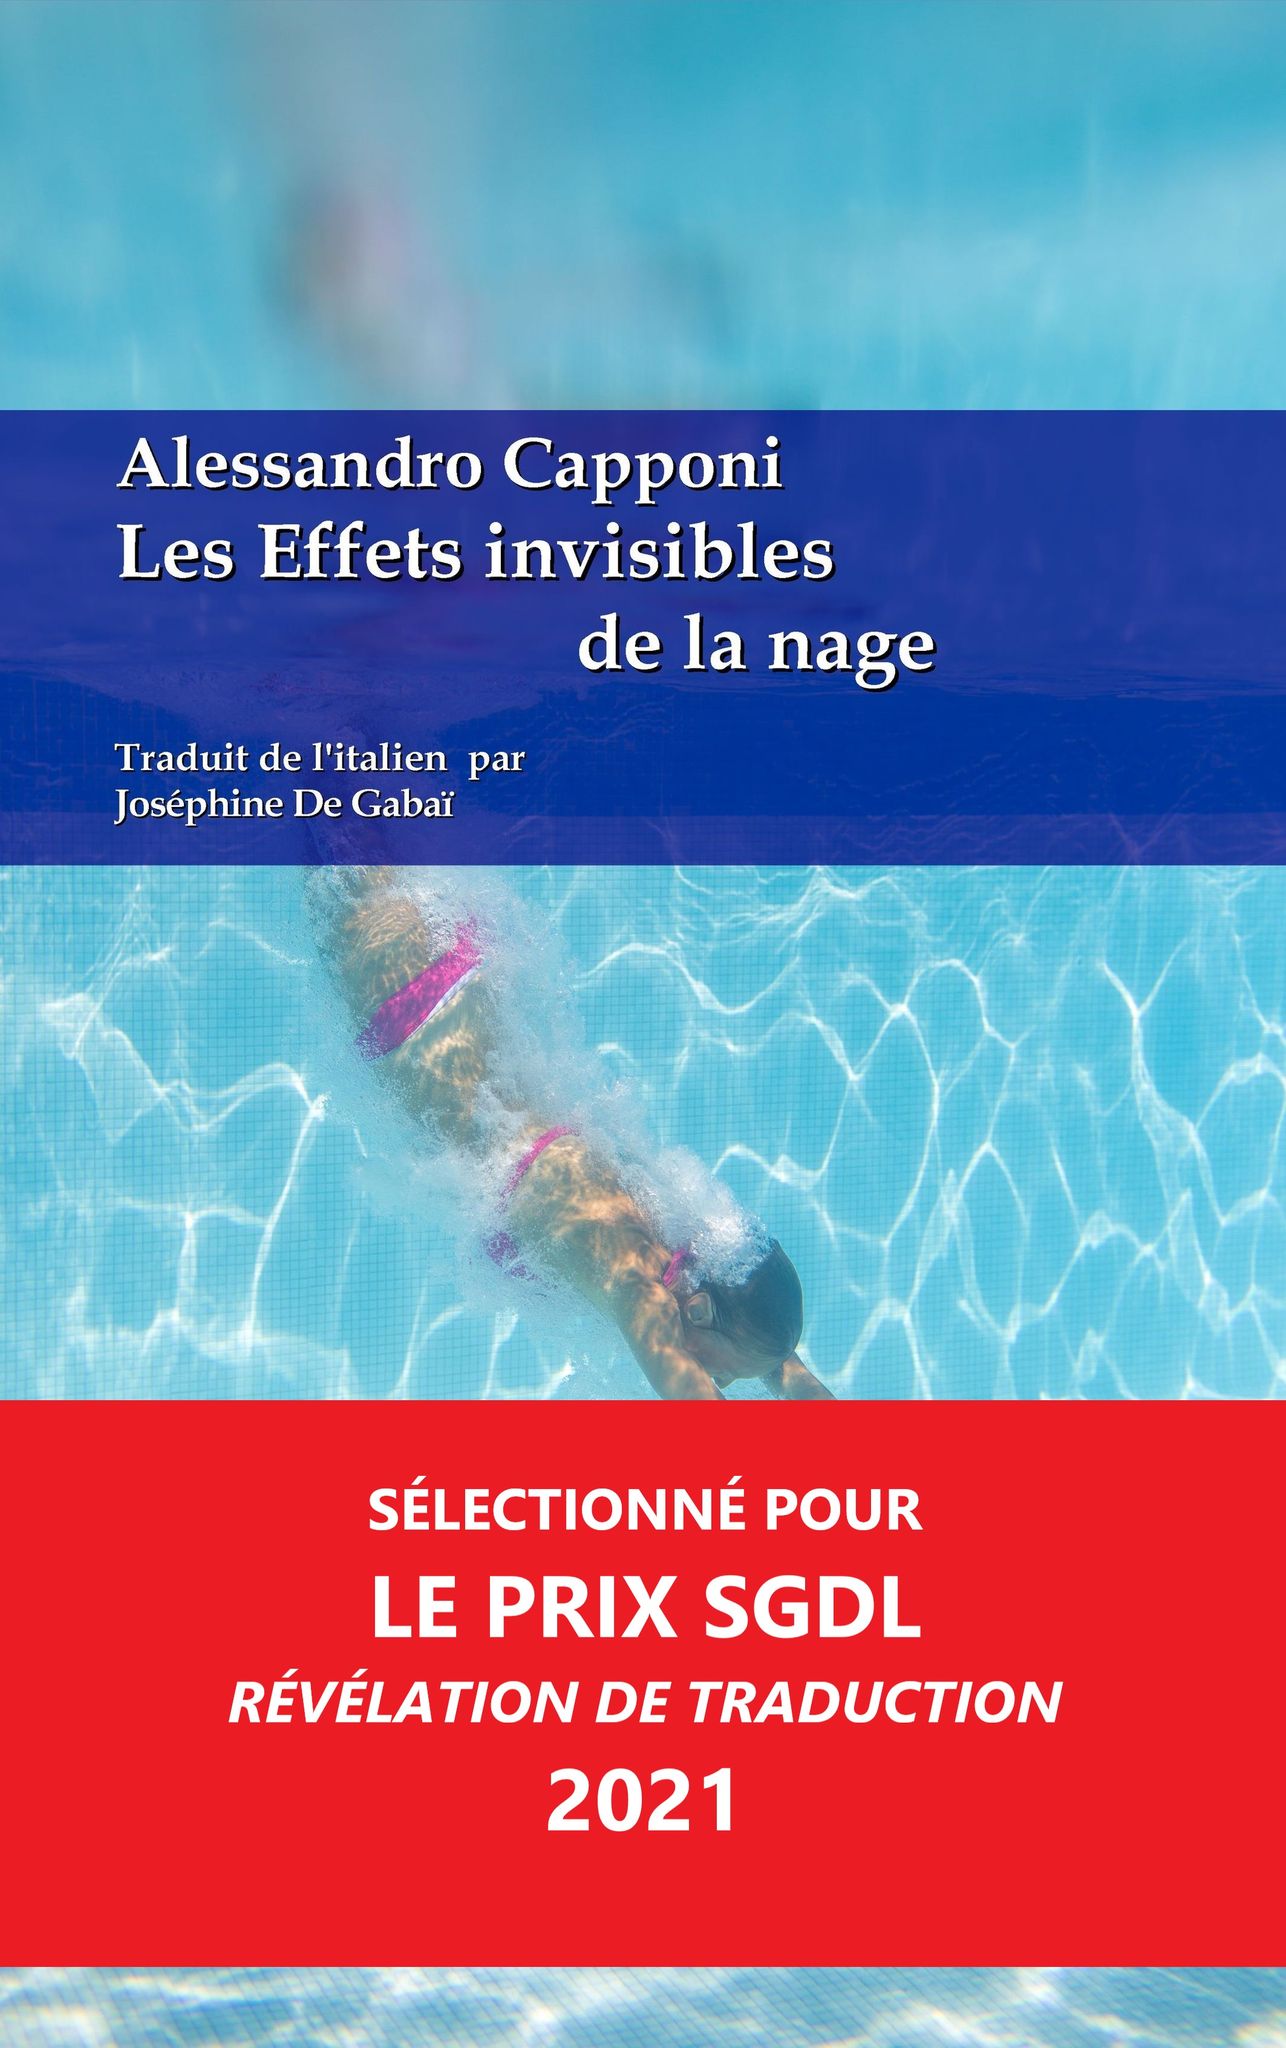 You are currently viewing Les effets invisibles de la nage, d’Alessandro Caponi & Joséphine de Gabaï